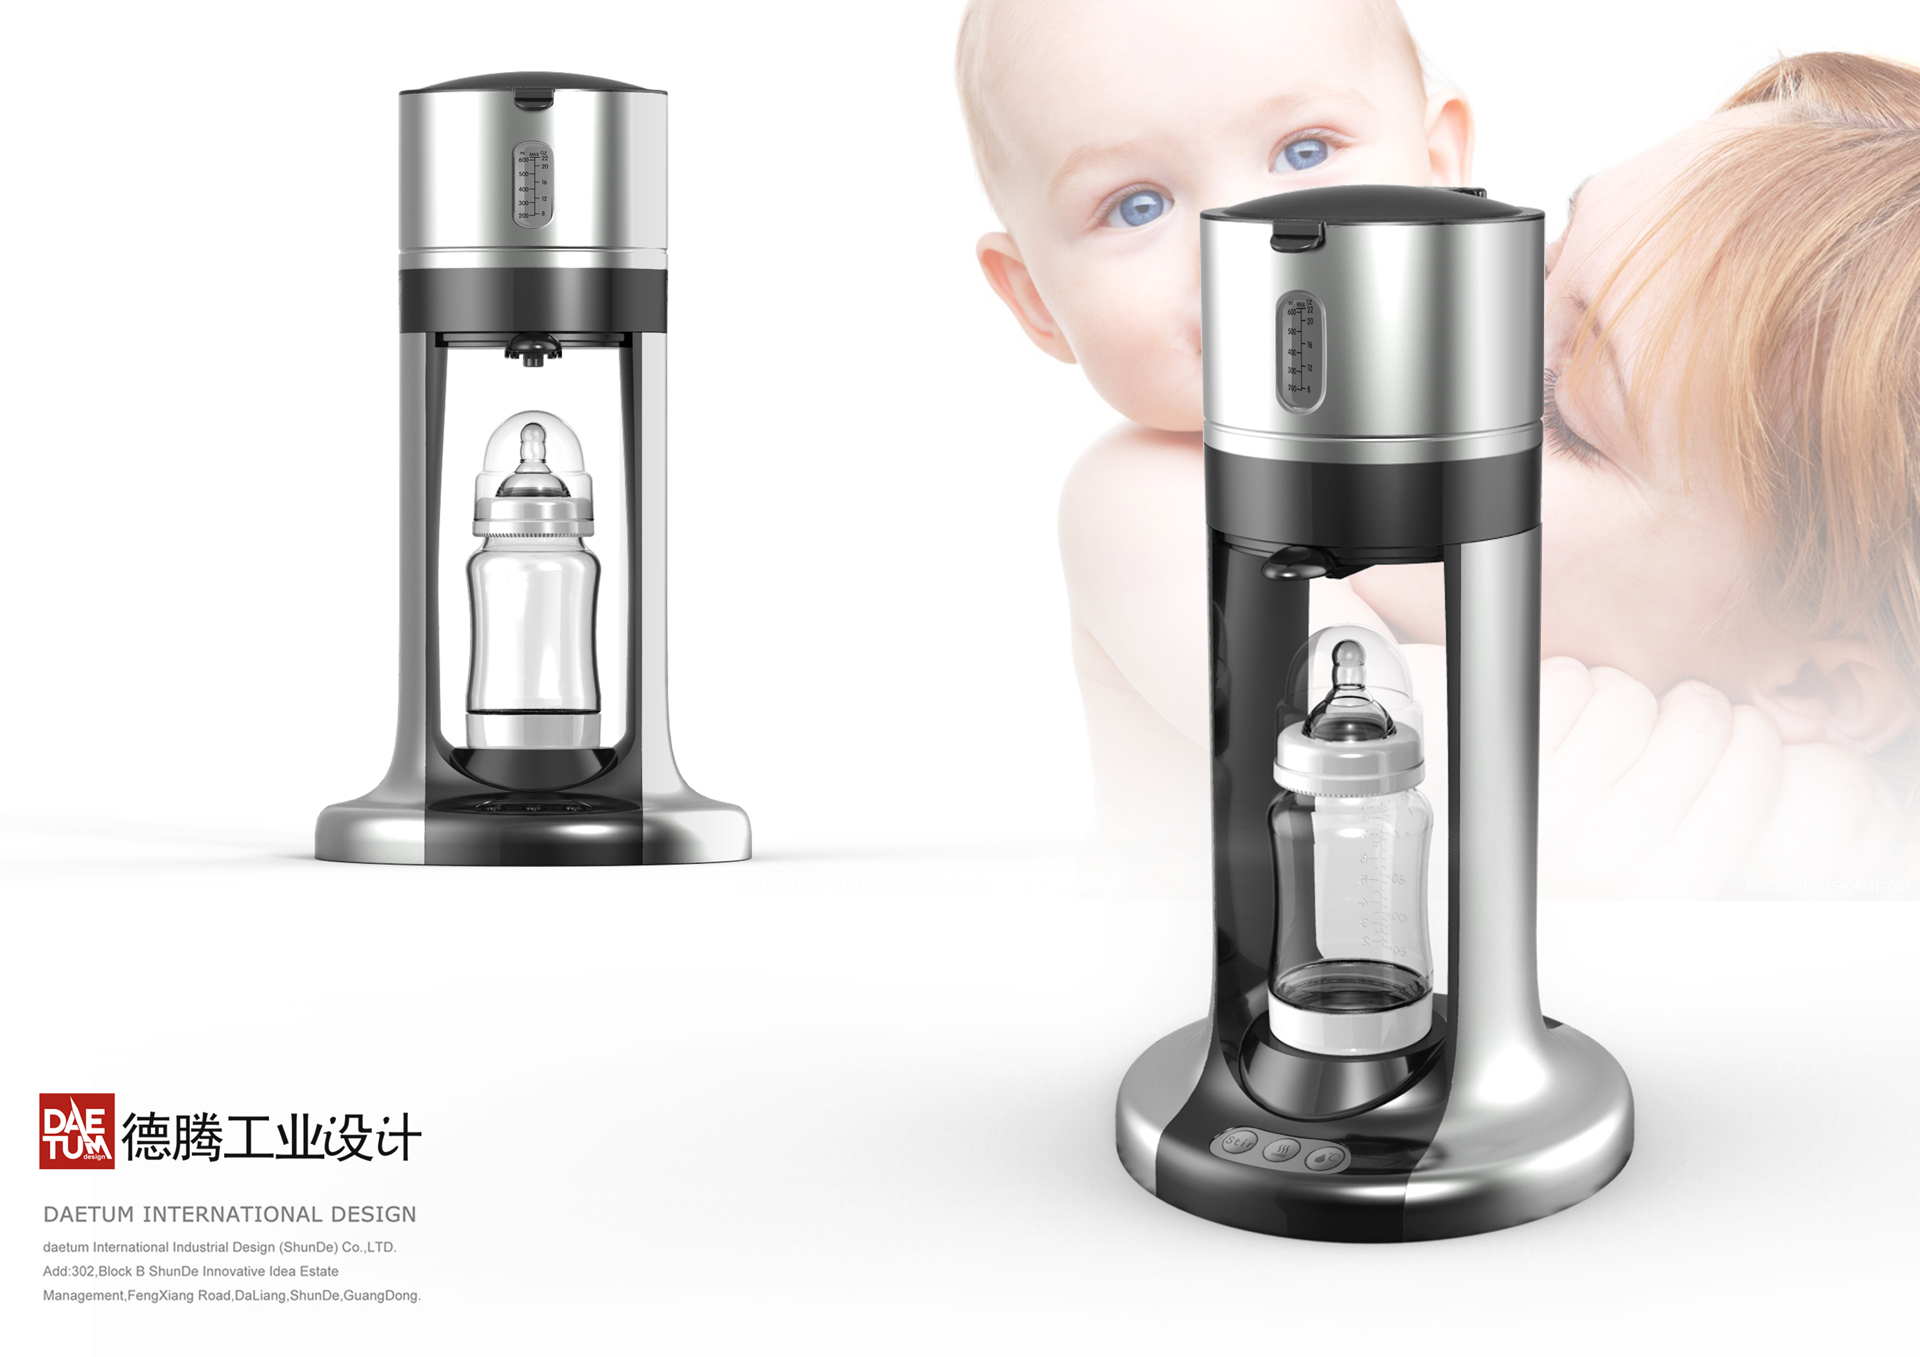 婴儿冲奶机产品设计,婴儿冲奶机外观设计,婴儿冲奶机设计